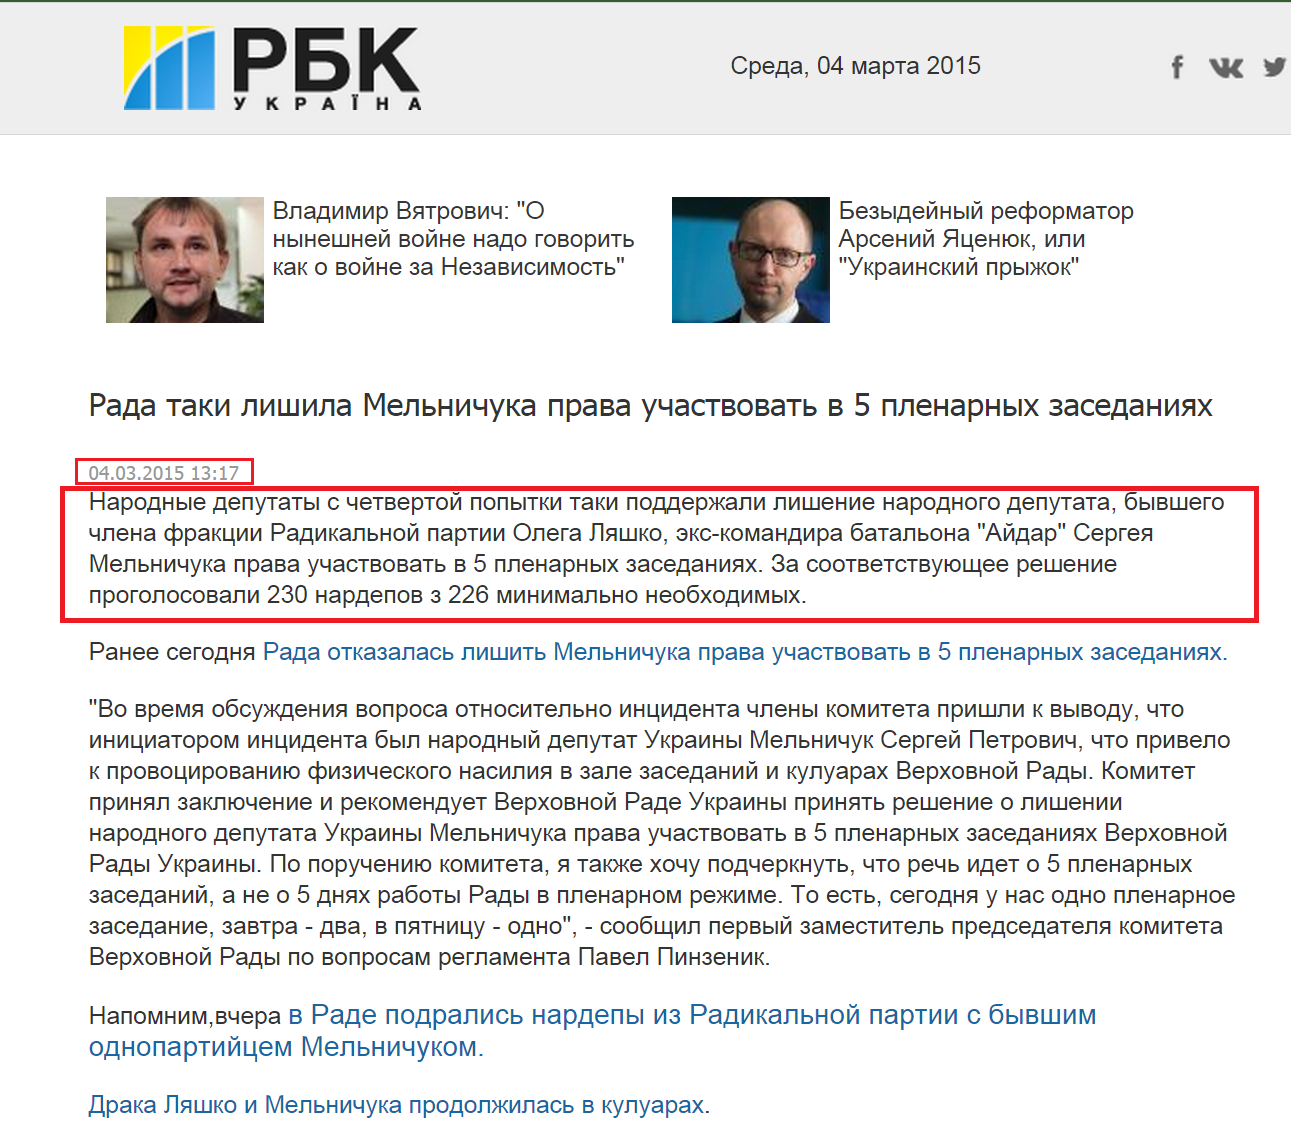 http://www.rbc.ua/rus/news/politics/rada-taki-lishila-melnichuka-prava-uchastvovat-v-5-plenarnyh-04032015131700